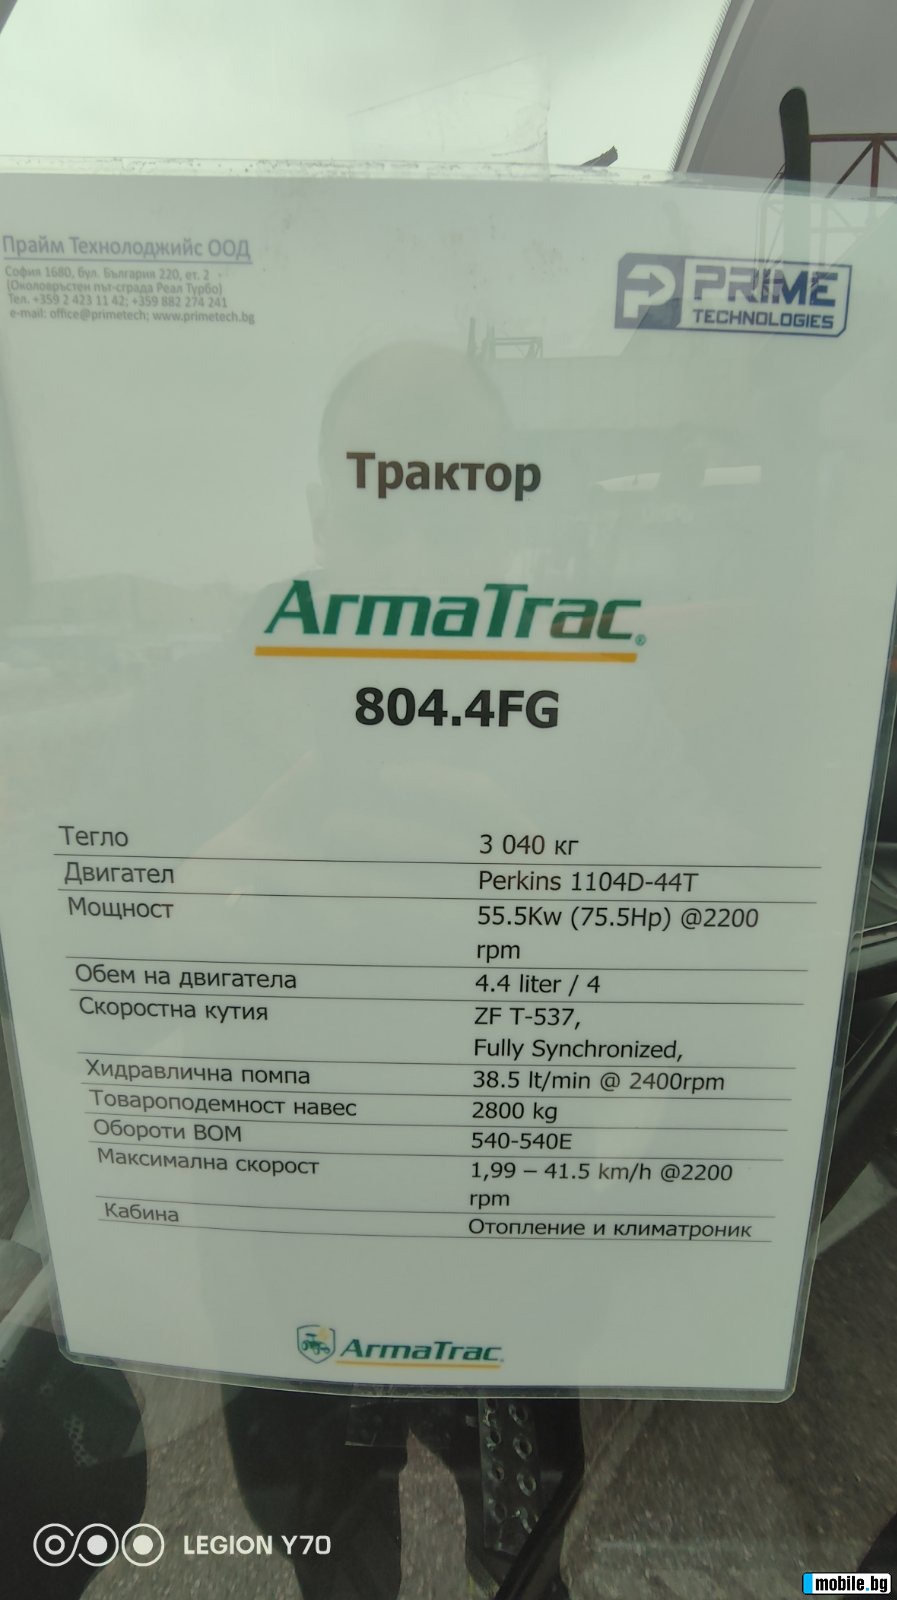  Armatrac 804.4 FG  | Mobile.bg   5